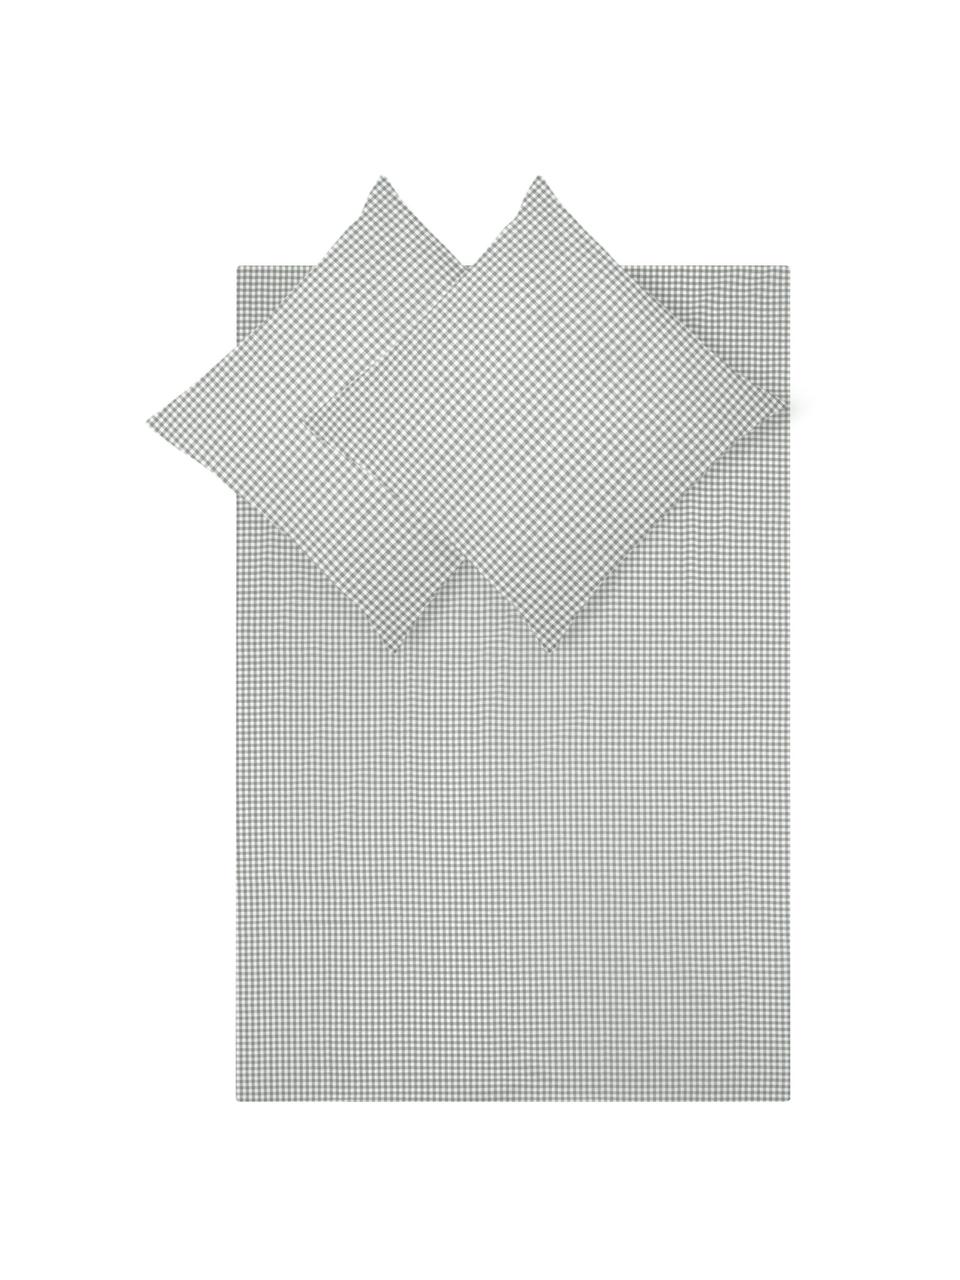 Karierte Baumwoll-Bettwäsche Scotty in Grau/Weiß, 100% Baumwolle

Fadendichte 118 TC, Standard Qualität

Bettwäsche aus Baumwolle fühlt sich auf der Haut angenehm weich an, nimmt Feuchtigkeit gut auf und eignet sich für Allergiker, Hellgrau/Weiß, 200 x 200 cm + 2 Kissen 80 x 80 cm